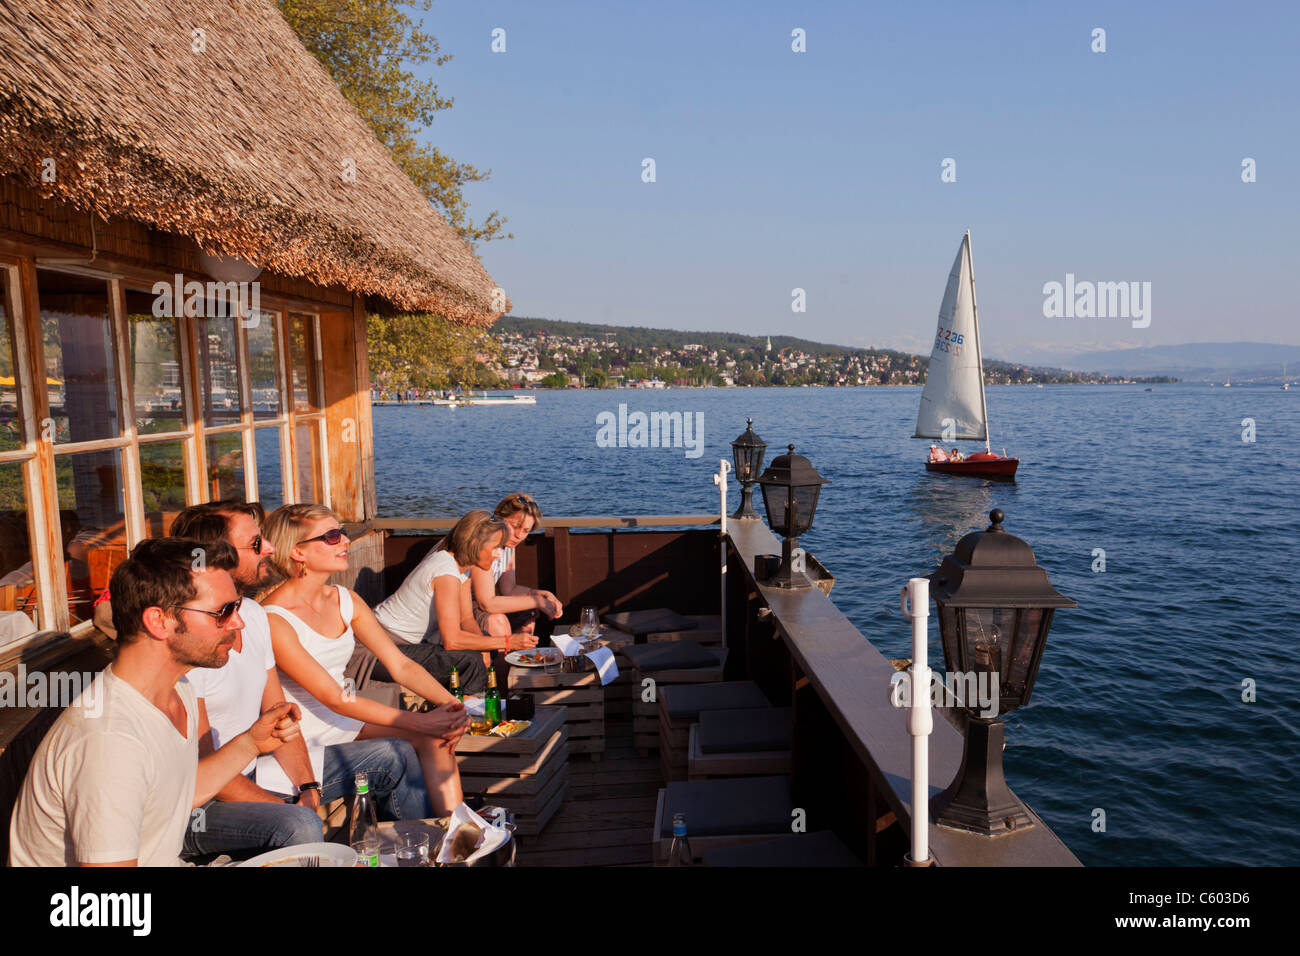 Fischerhuette at Zurich lake, Switzerland Zuerich, lake promenade , people , Stock Photo